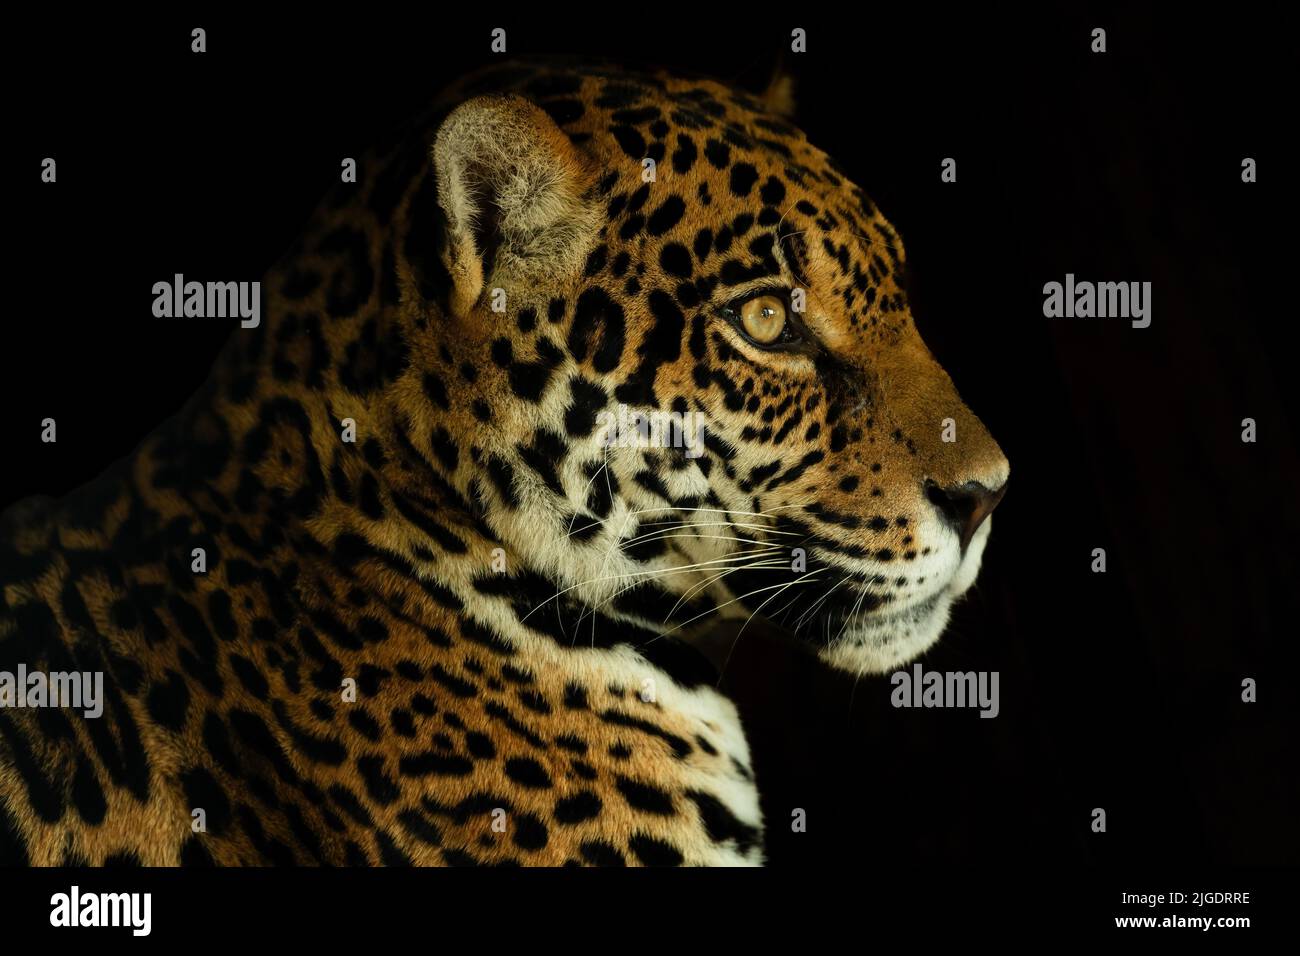 Jaguar - Panthera onca, ritratto di bel gatto grande da foreste sudamericane, bacino amazzonico, Brasile. Foto Stock